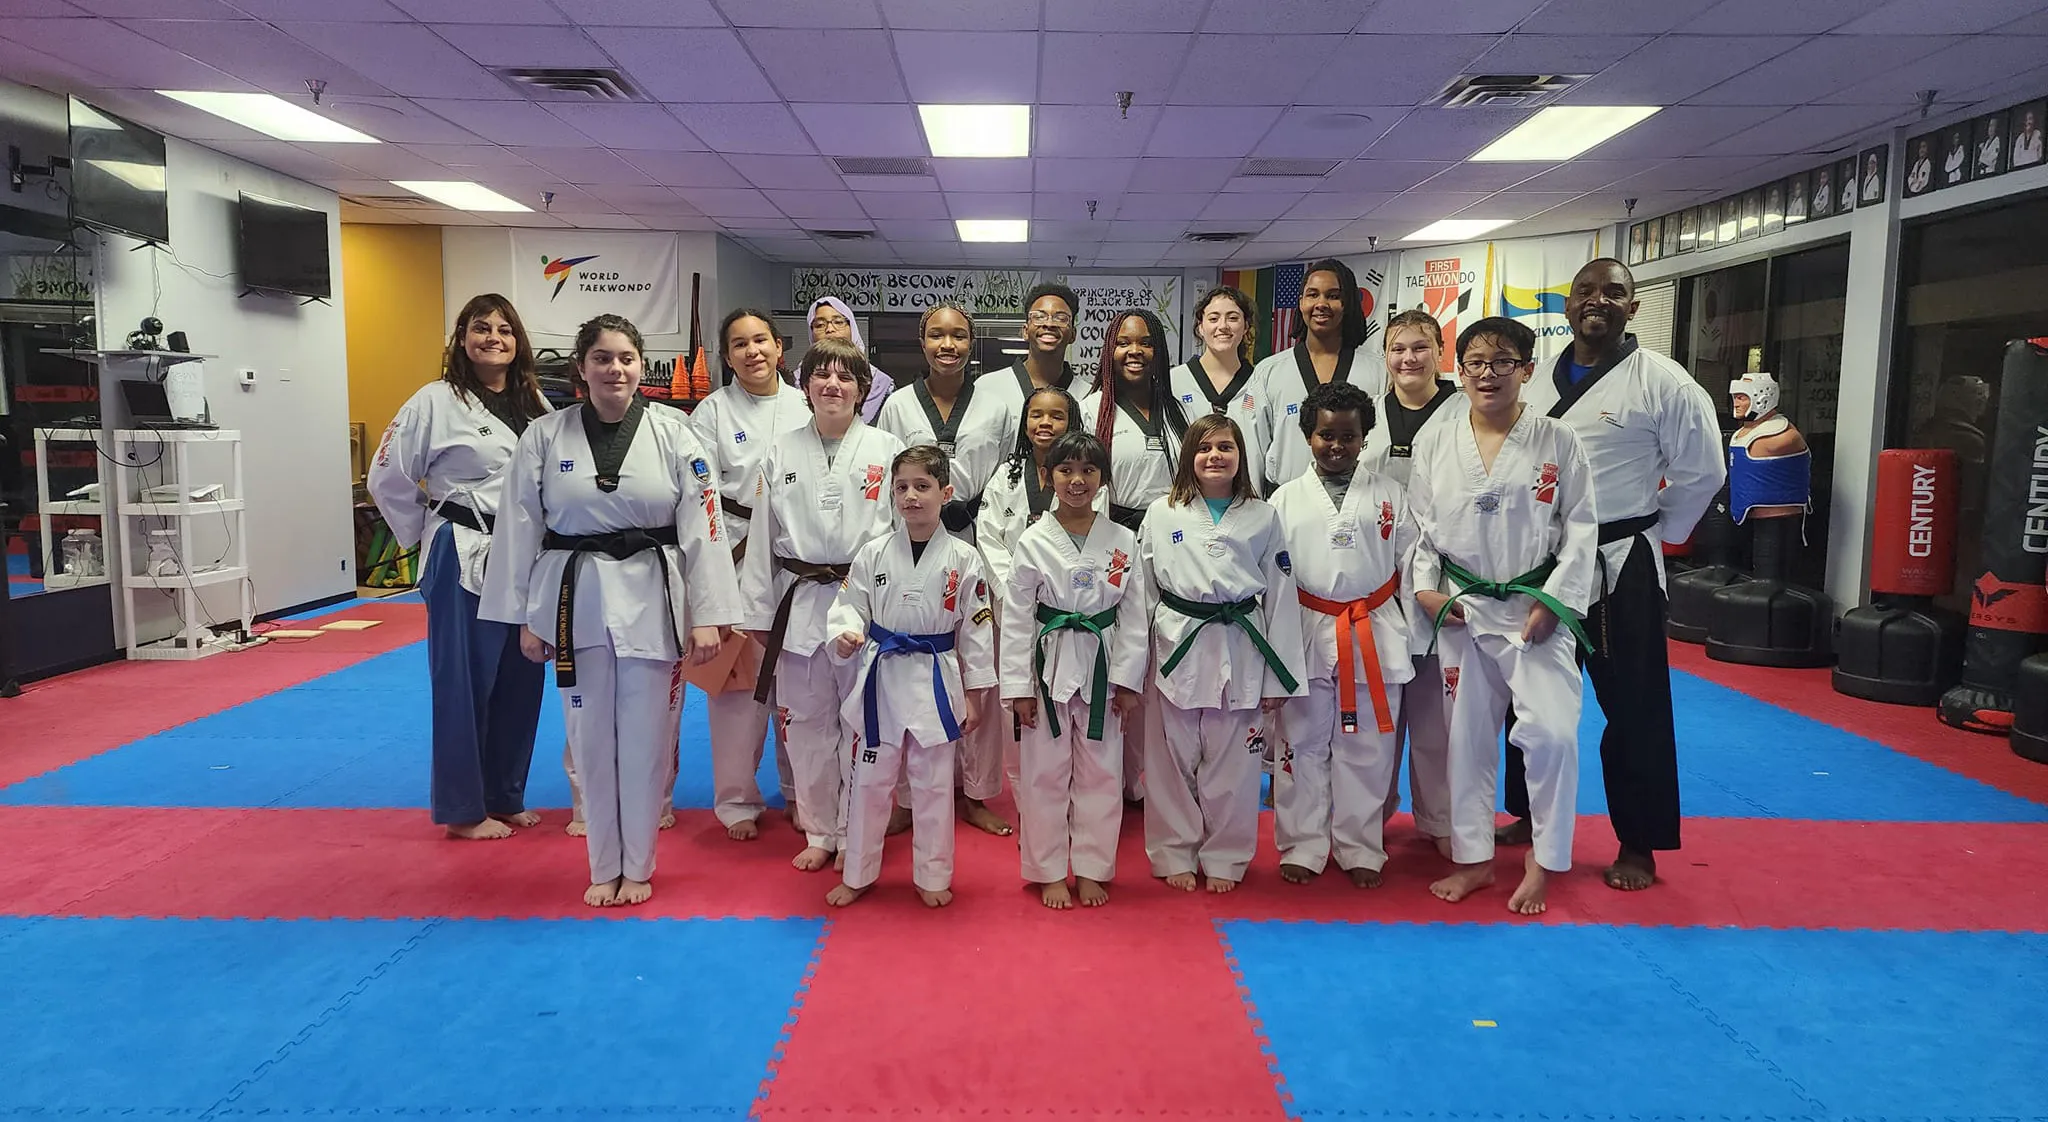 taekwondo-students-and-instructors-lined-up-in-dojang